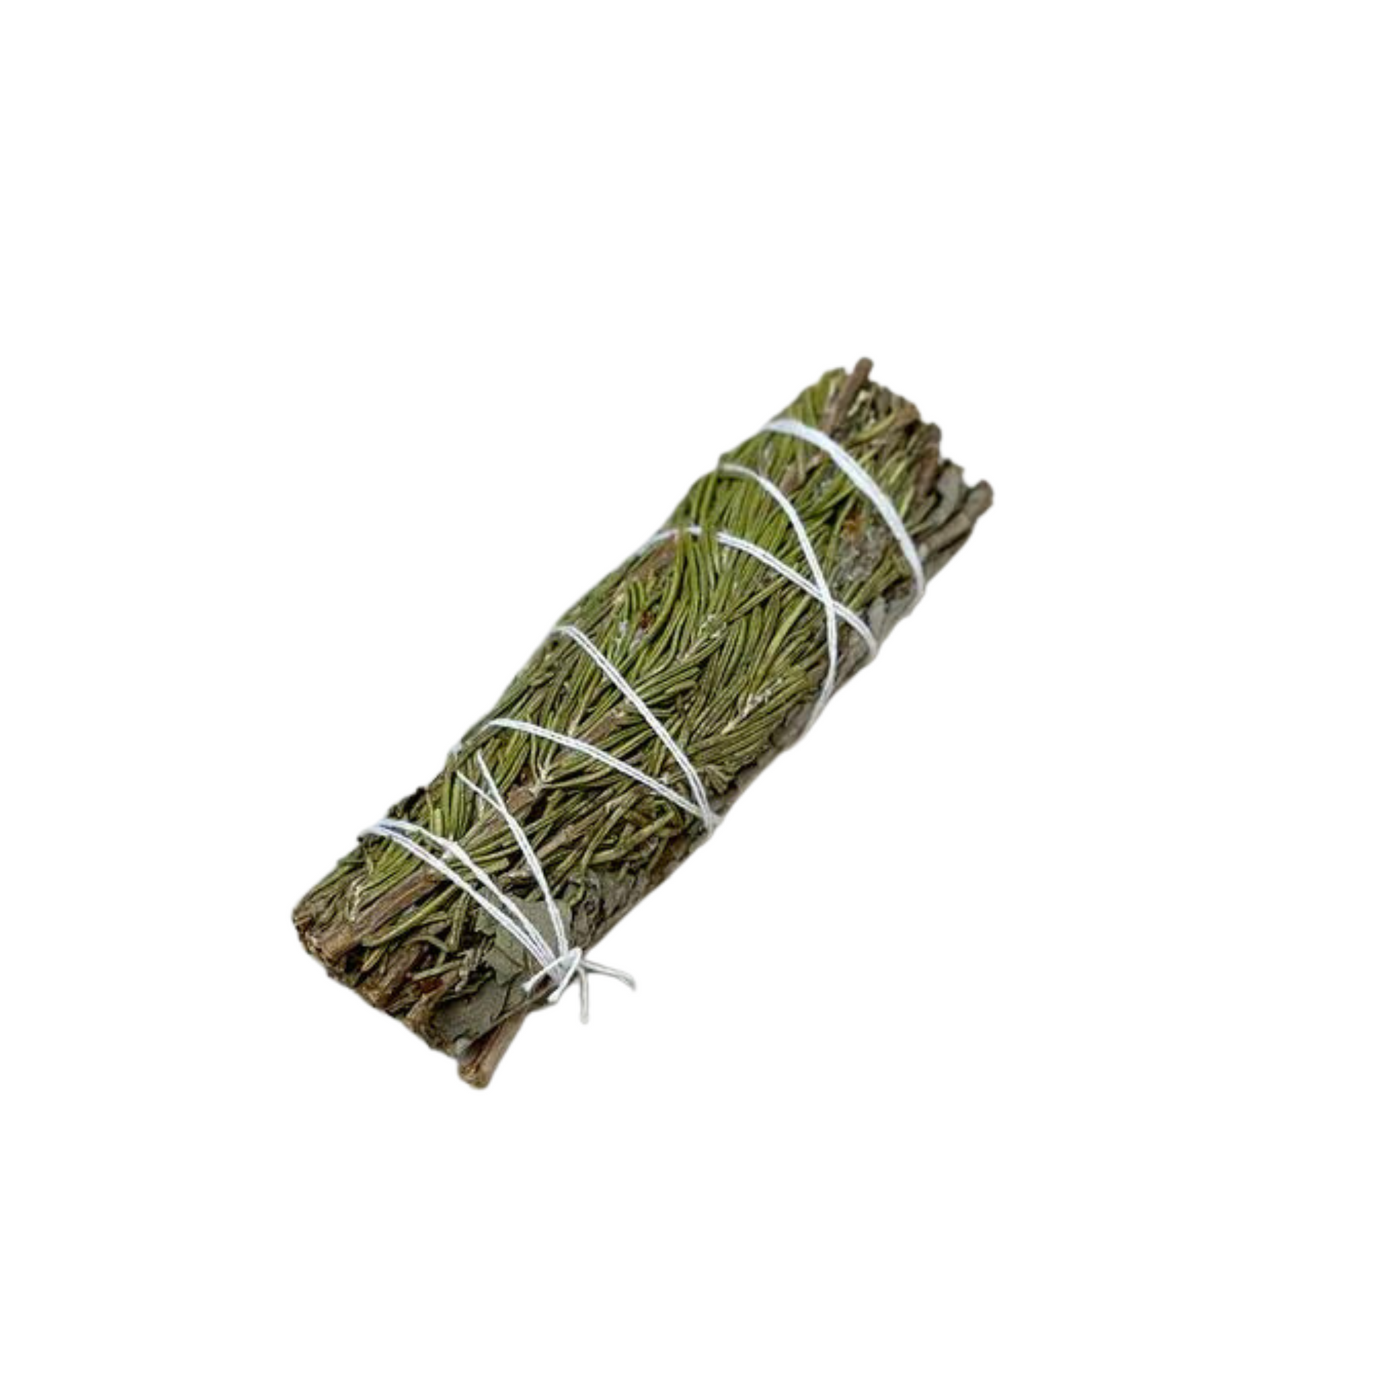 Incausa Herbal White Sage Smudge Stick - Radical Giving